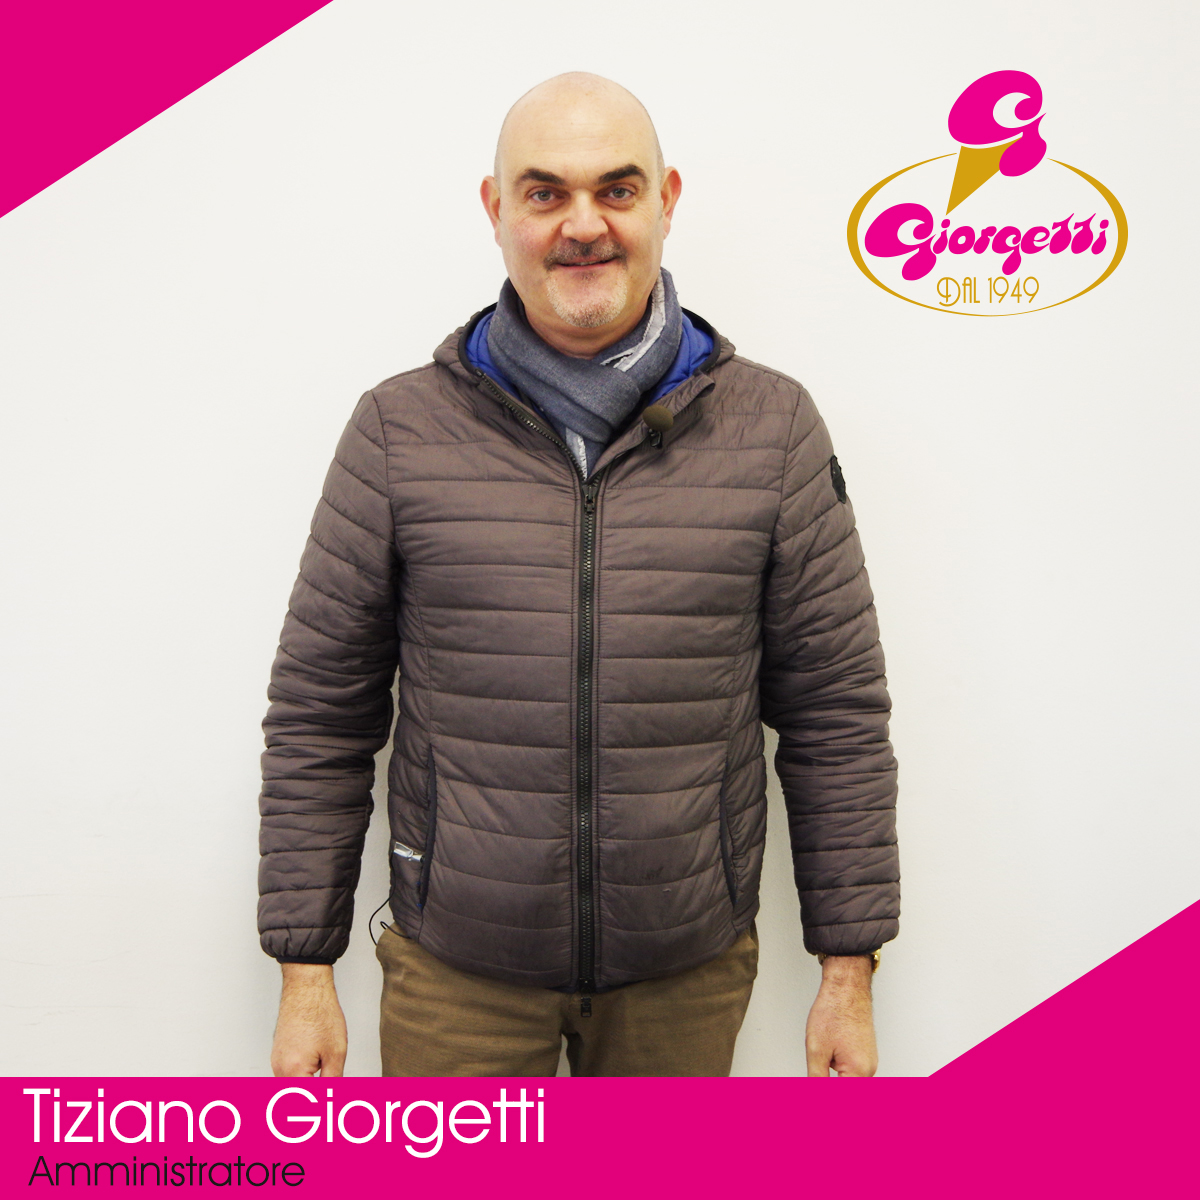 Tiziano Giorgetti